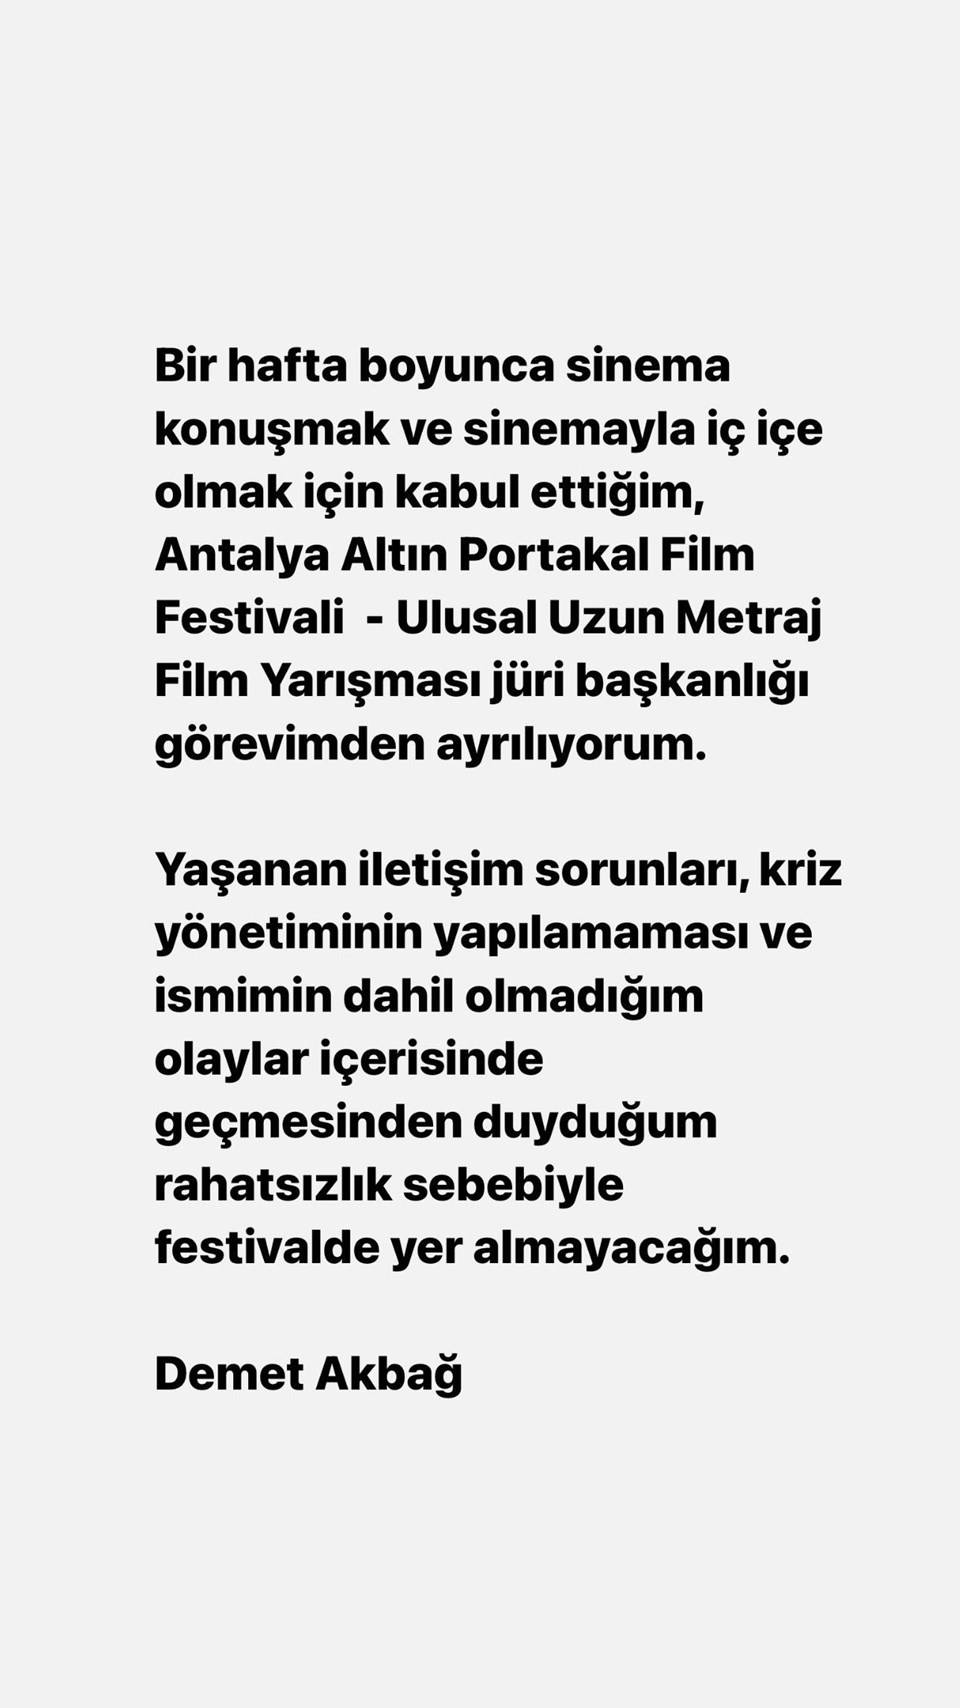 Demet Akbağ Altın Portakal Film Festivali jüri başkanlığı görevinden ayrıldı - 1